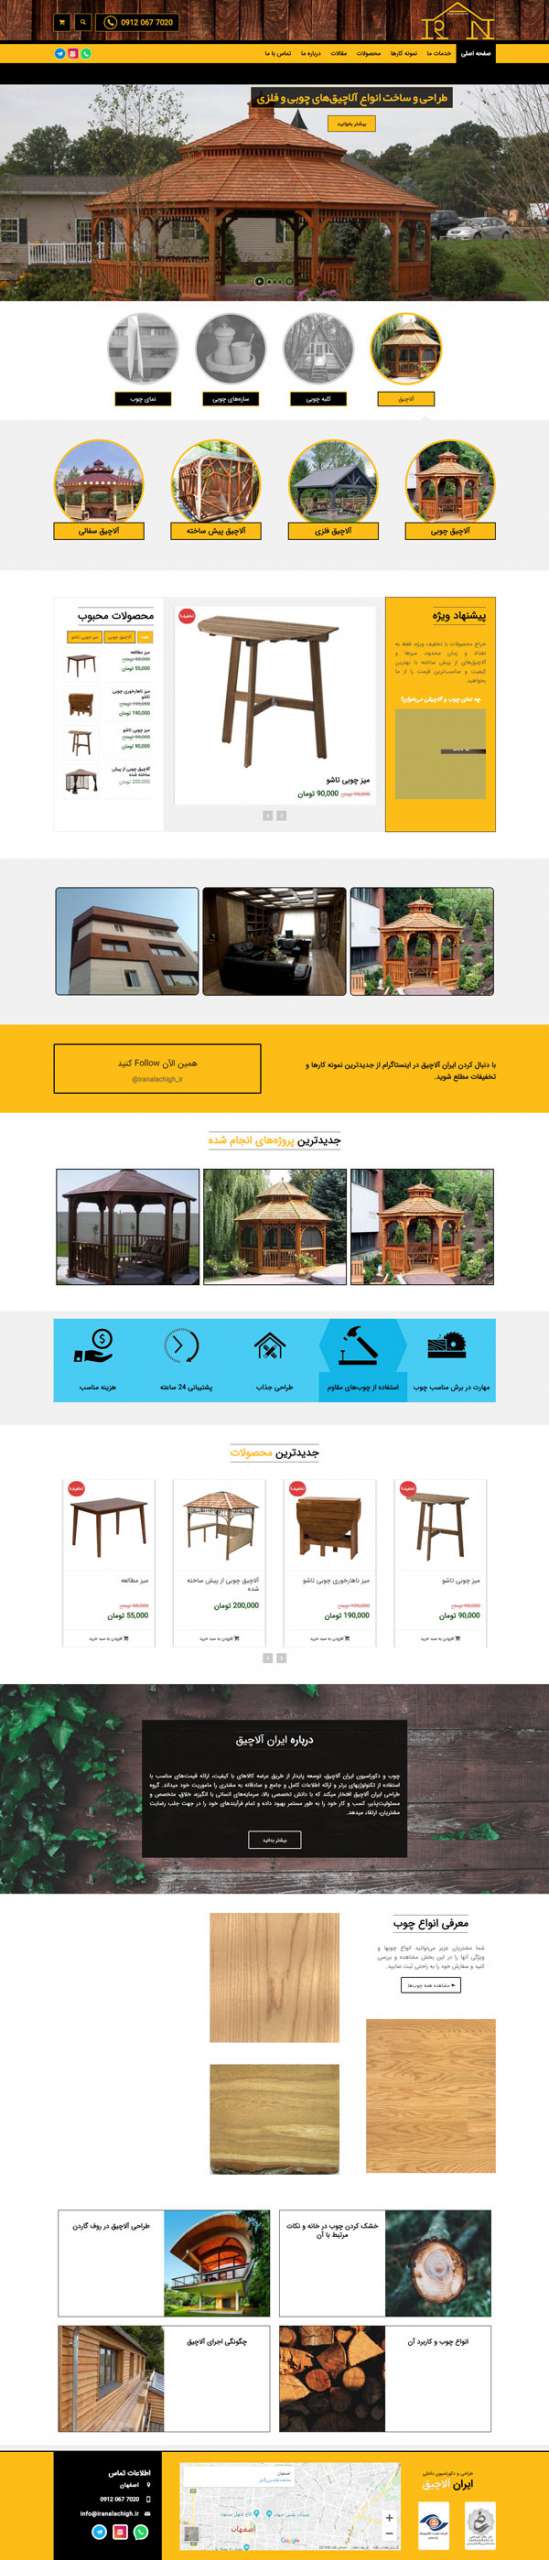 طراحی سایت ایران آلاچیق | ساخت و اجرای آلاچیق